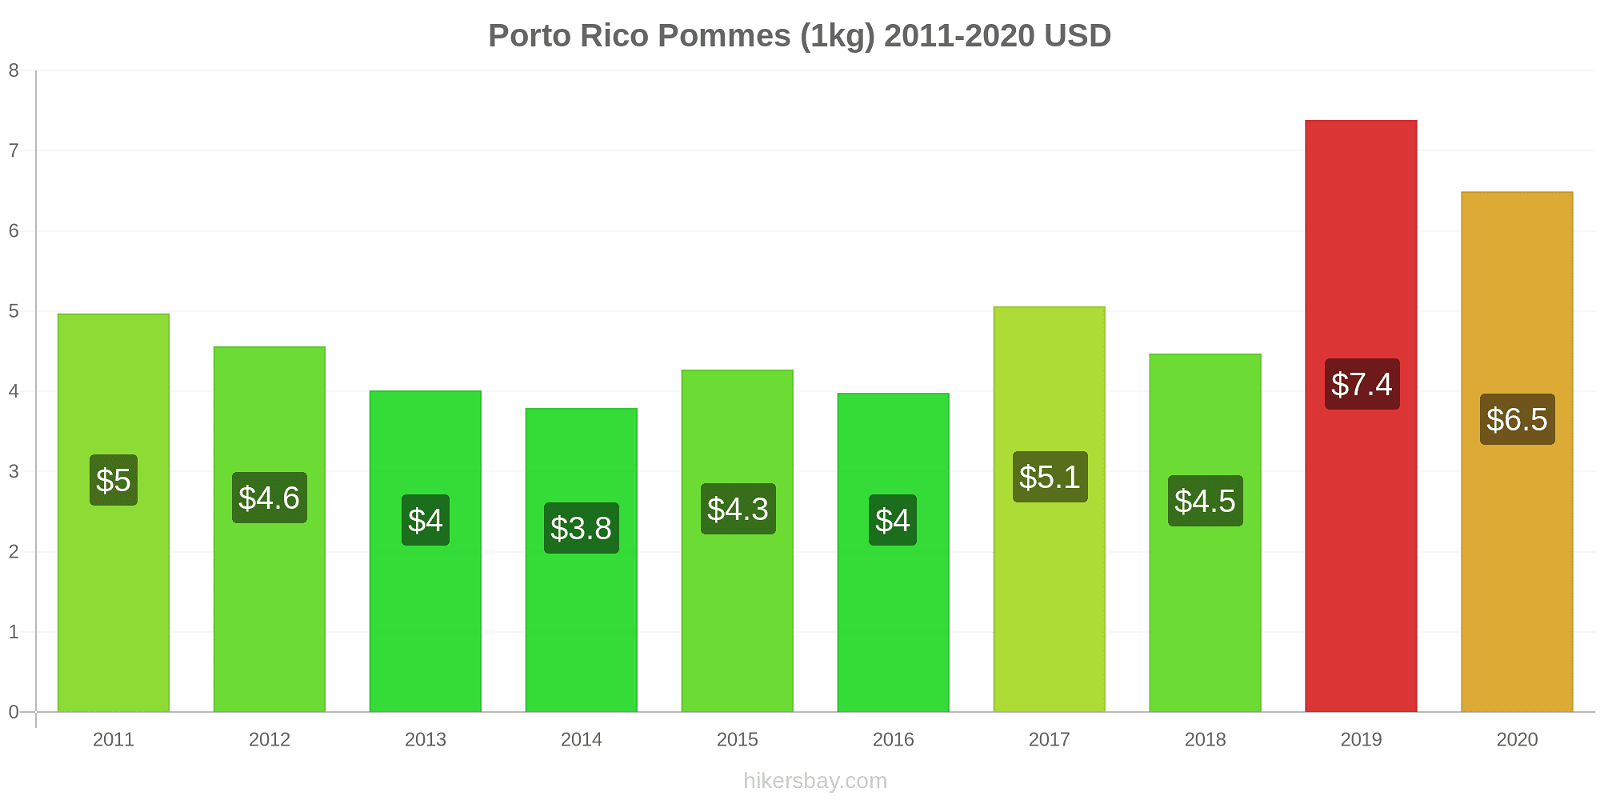 Porto Rico changements de prix Pommes (1kg) hikersbay.com